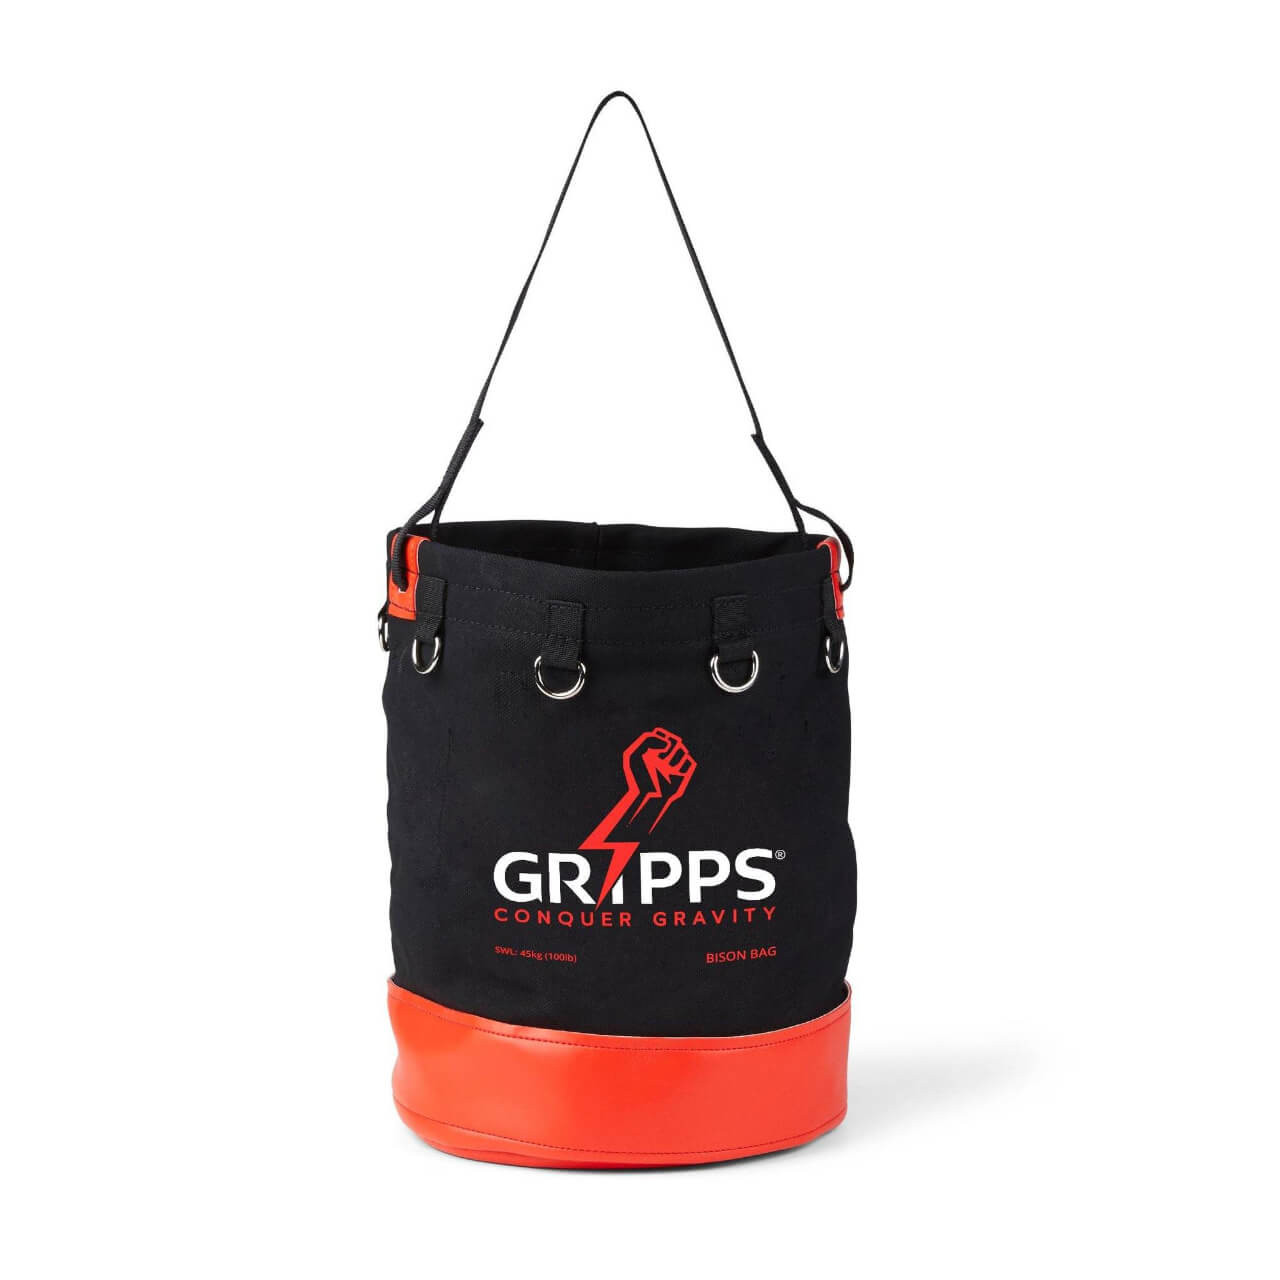 GRIPPS Bison Bag 40cm X 30cm 45kg Max Load